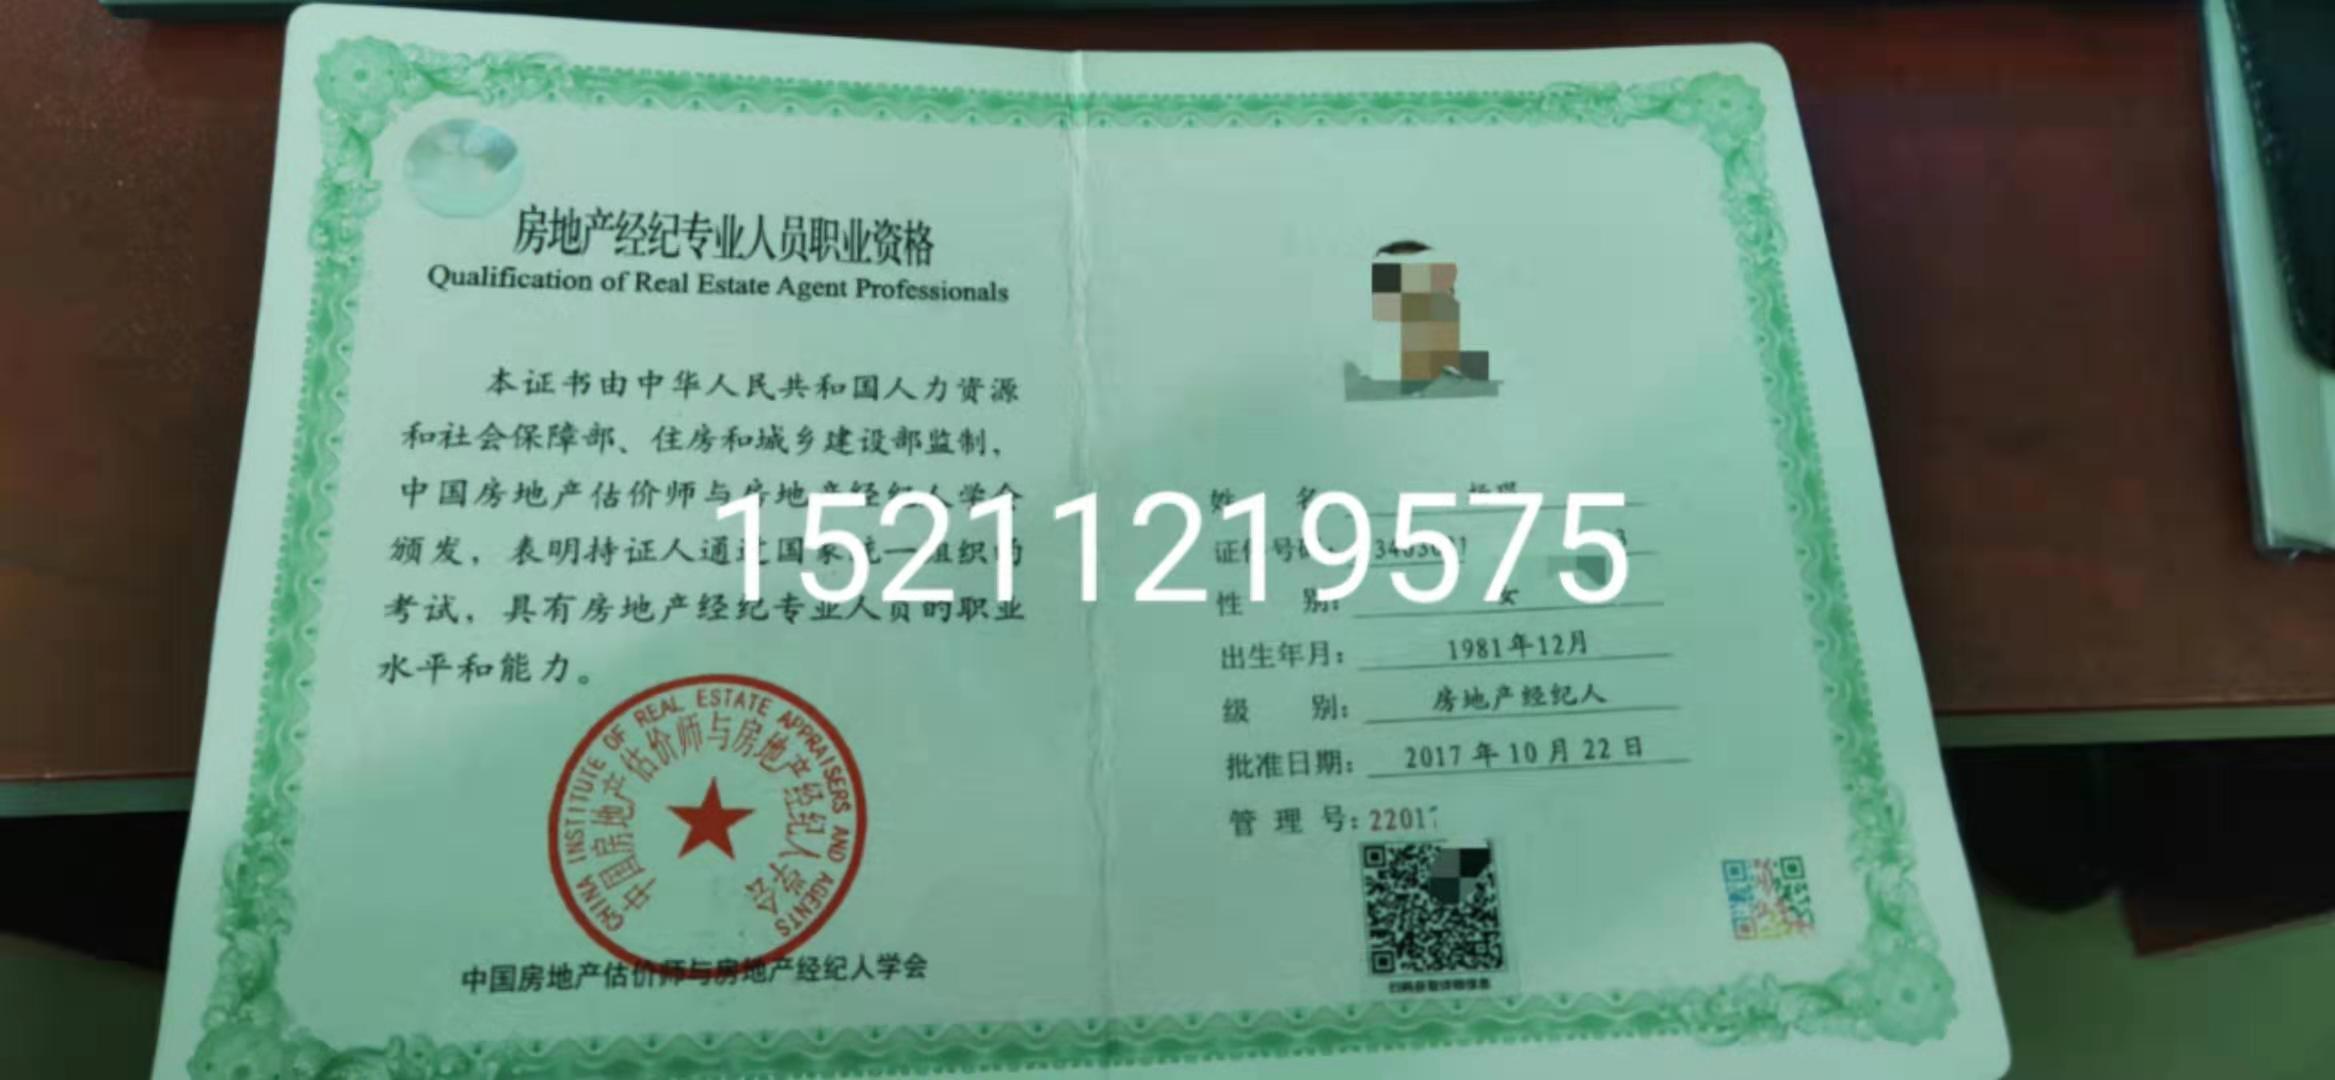 重庆房地产经纪人证书出租2020年新证的图片